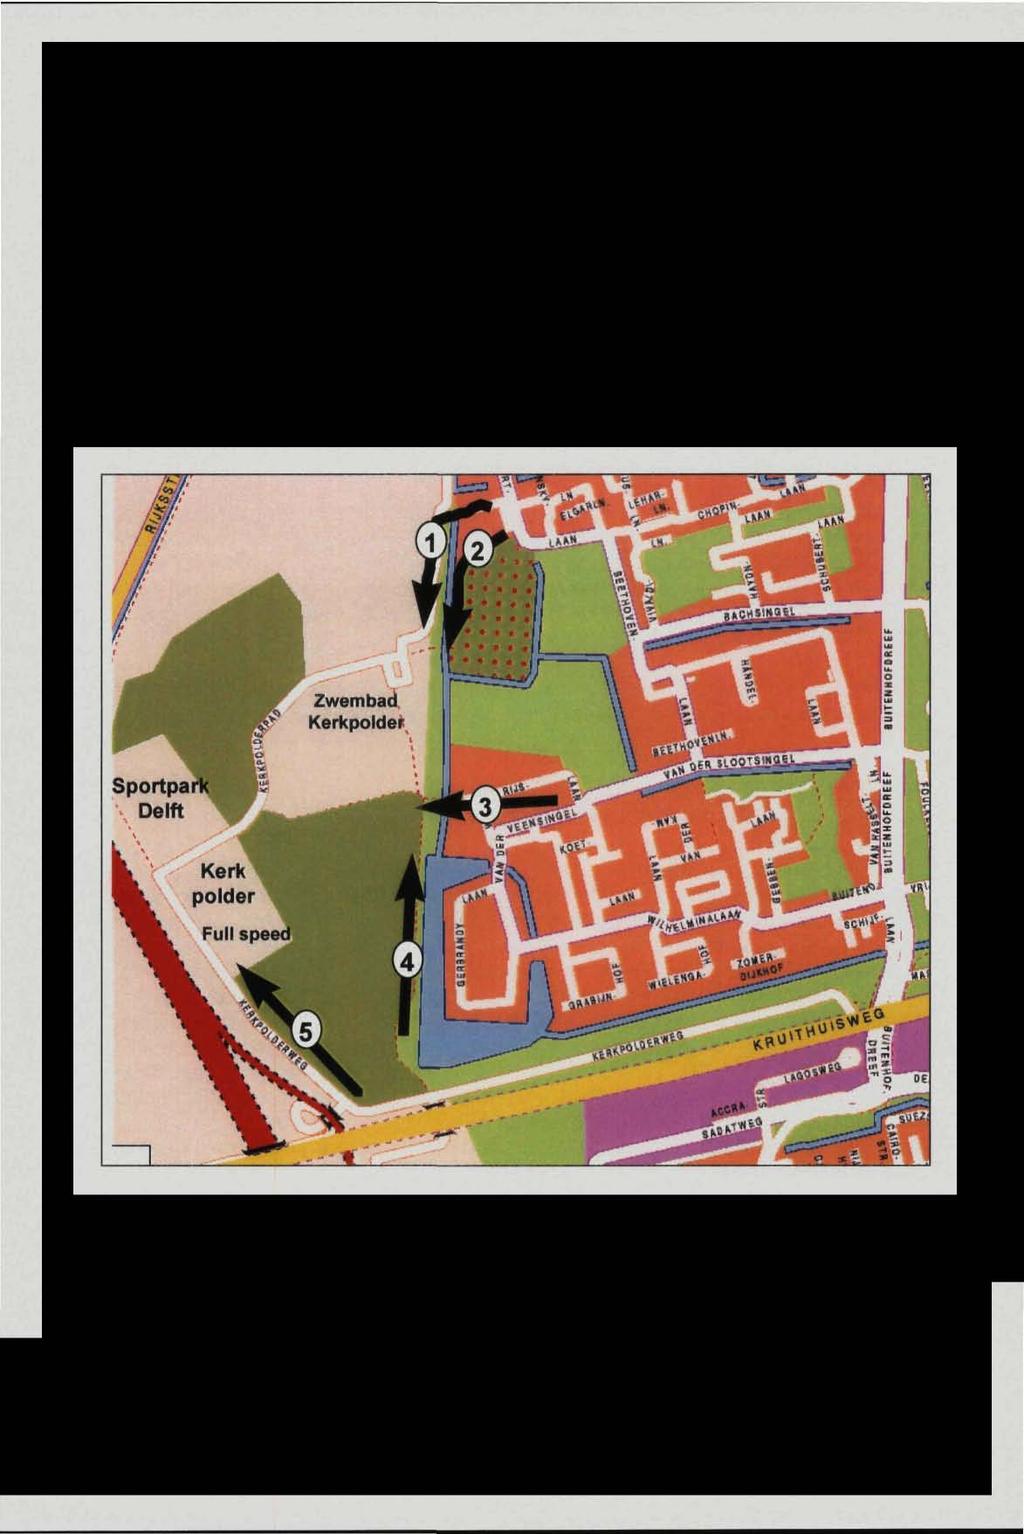 Met behulp van een kaartje van het Kerkpoldergebied konden zij aangeven of zij gekomen zijn via het Zwembadpad (route 1), het Kerkpolderpad (route 2), de van Rijslaan (route 3), de Tanthofkade (route